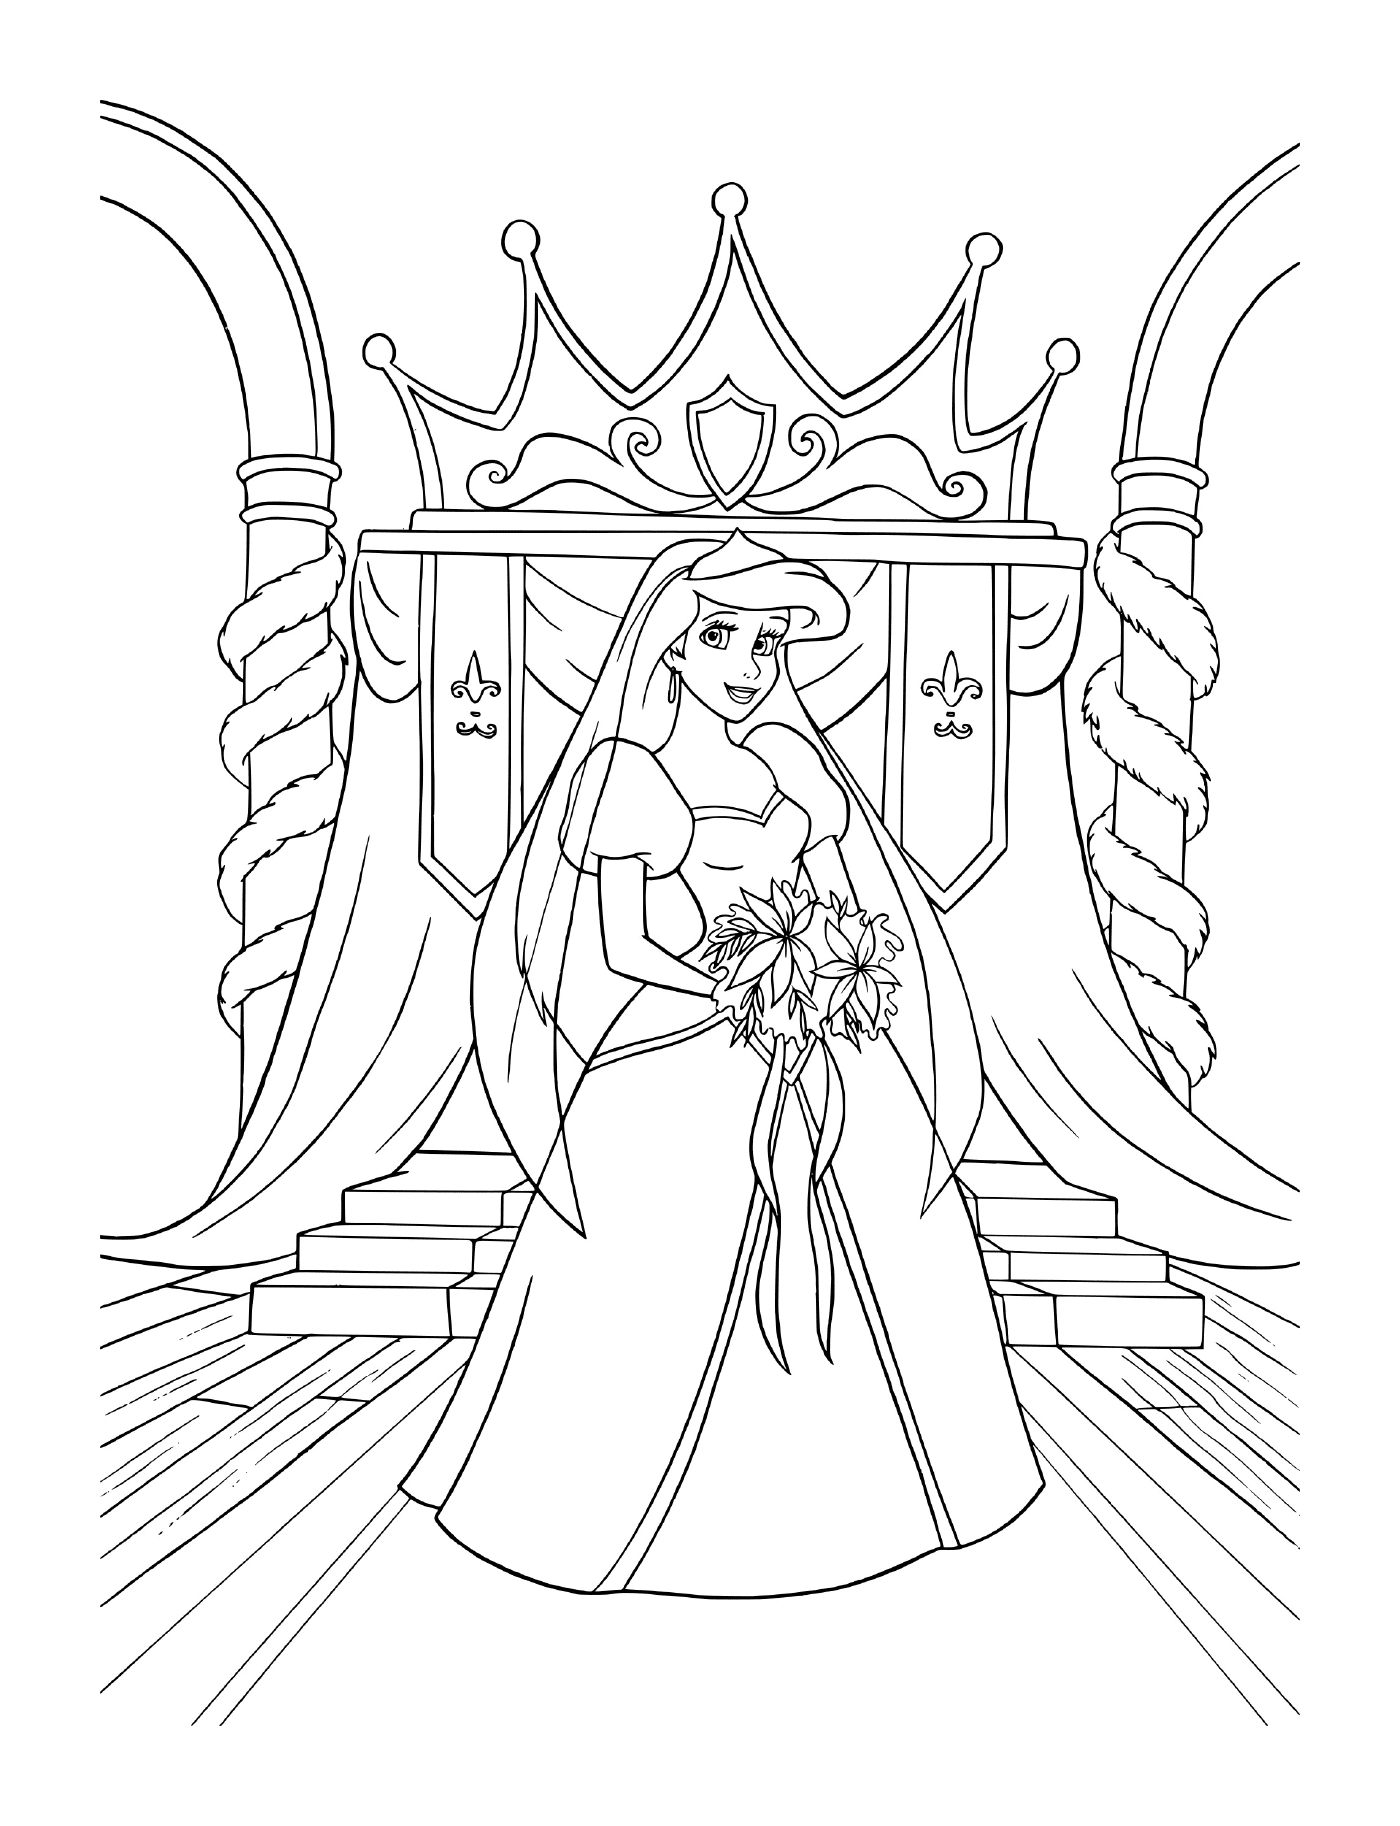  Невеста в свадебном платье сидящая на троне 